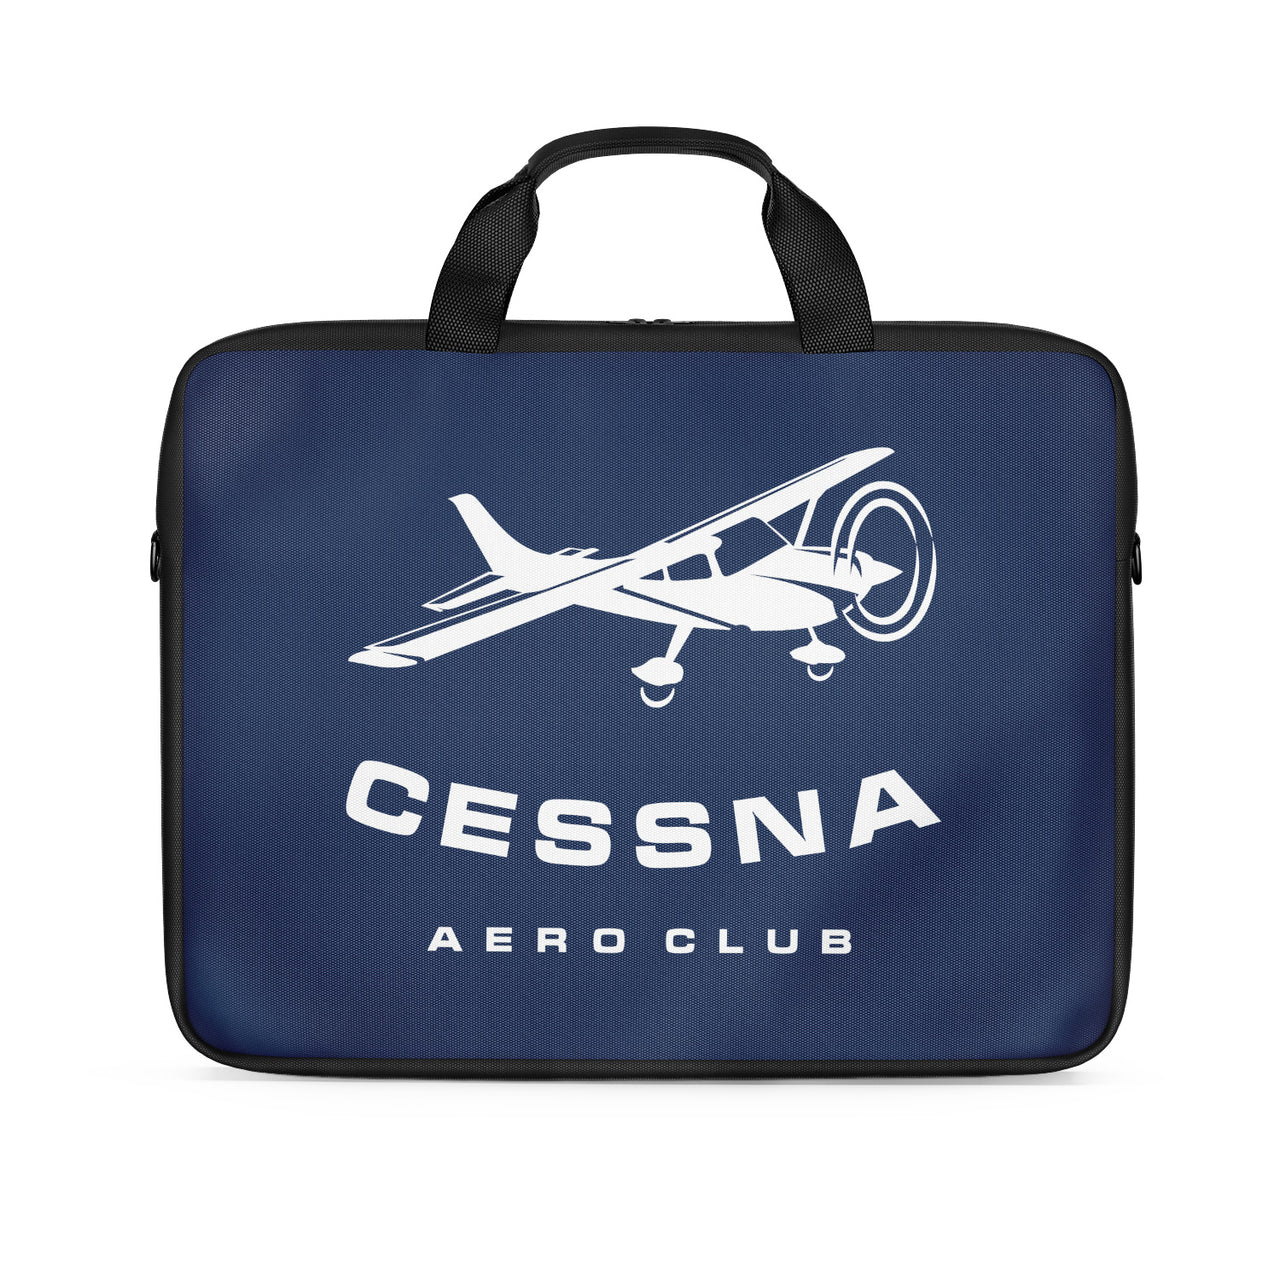 Cessna Aeroclub Designed Laptop & Tablet Bags